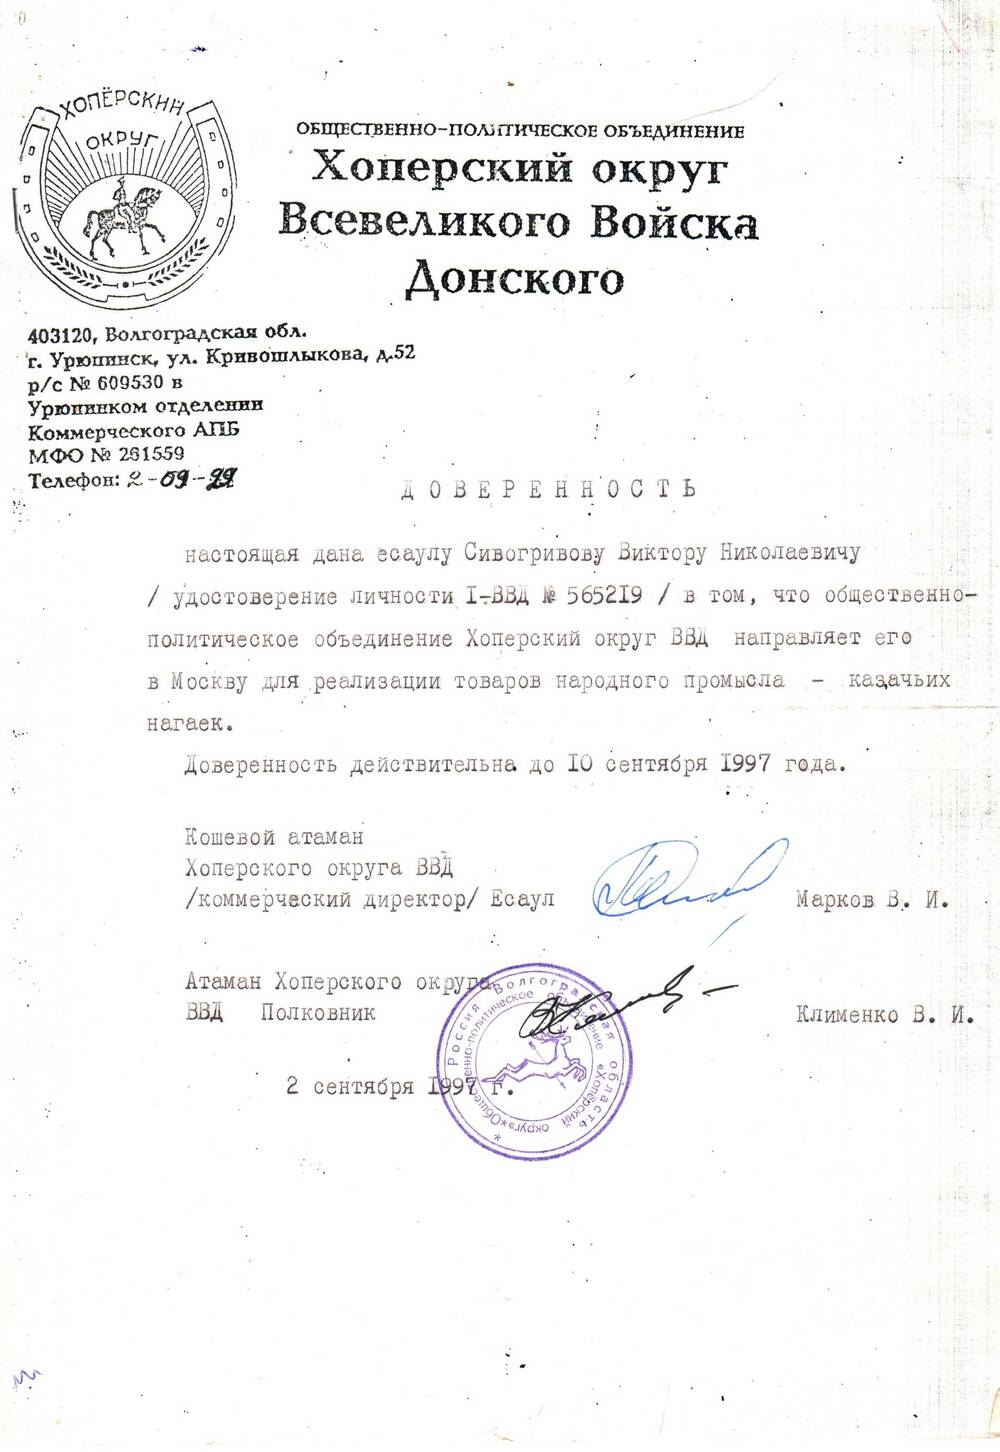 Доверенность, выданная Сивогривову В.Н. для реализации казачьих нагаек в Москве от 2 сентября 1997 г. за подписью атамана Клименко В.И.